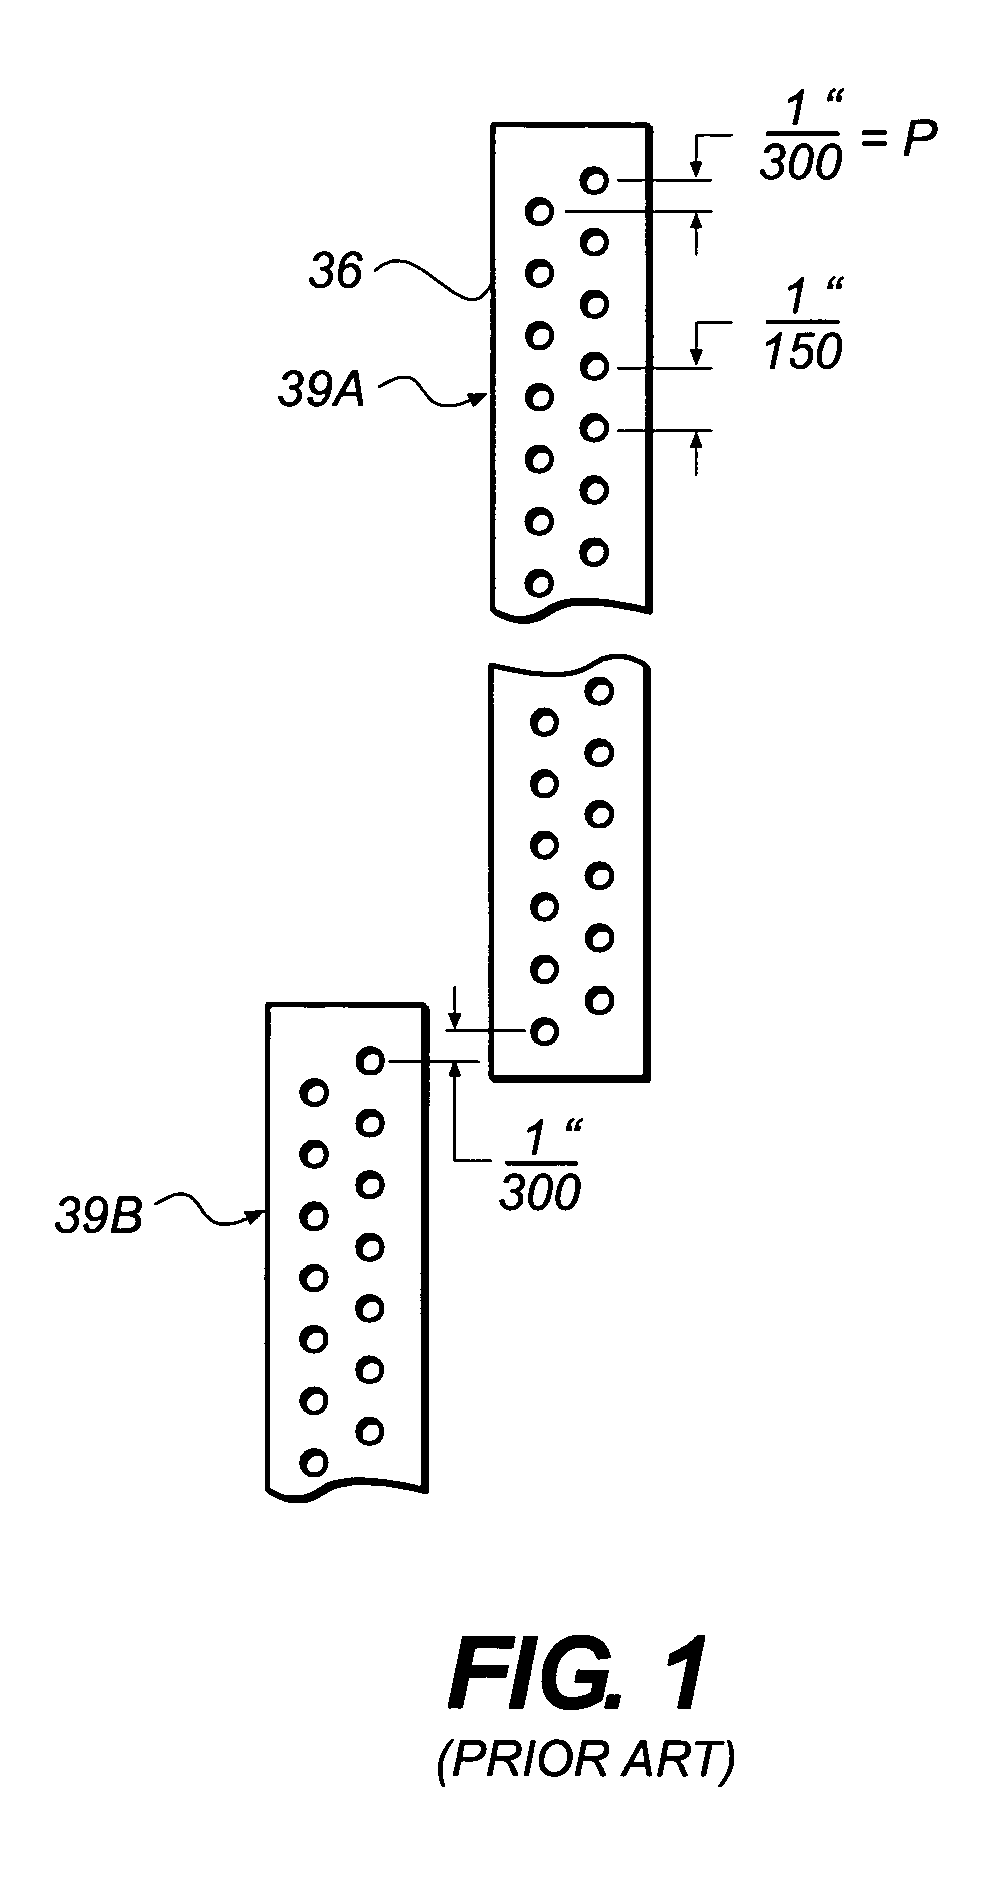 Method of aligning inkjet nozzle banks for an inkjet printer